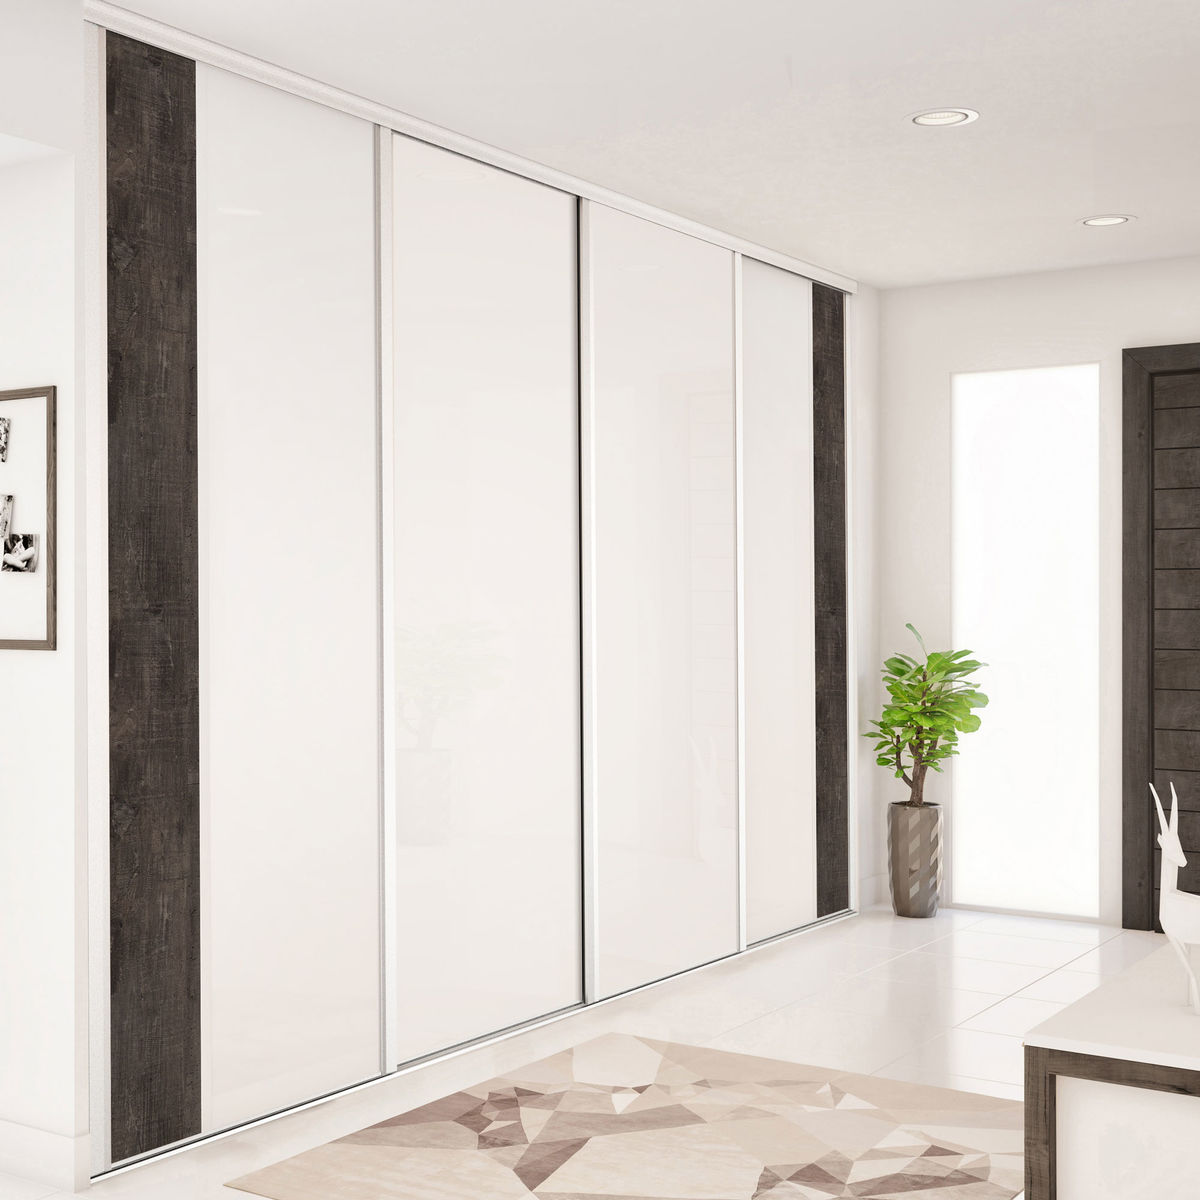 Façade de placard coulissante 4 portes verre laqué blanc pur, décor bois fumé brut